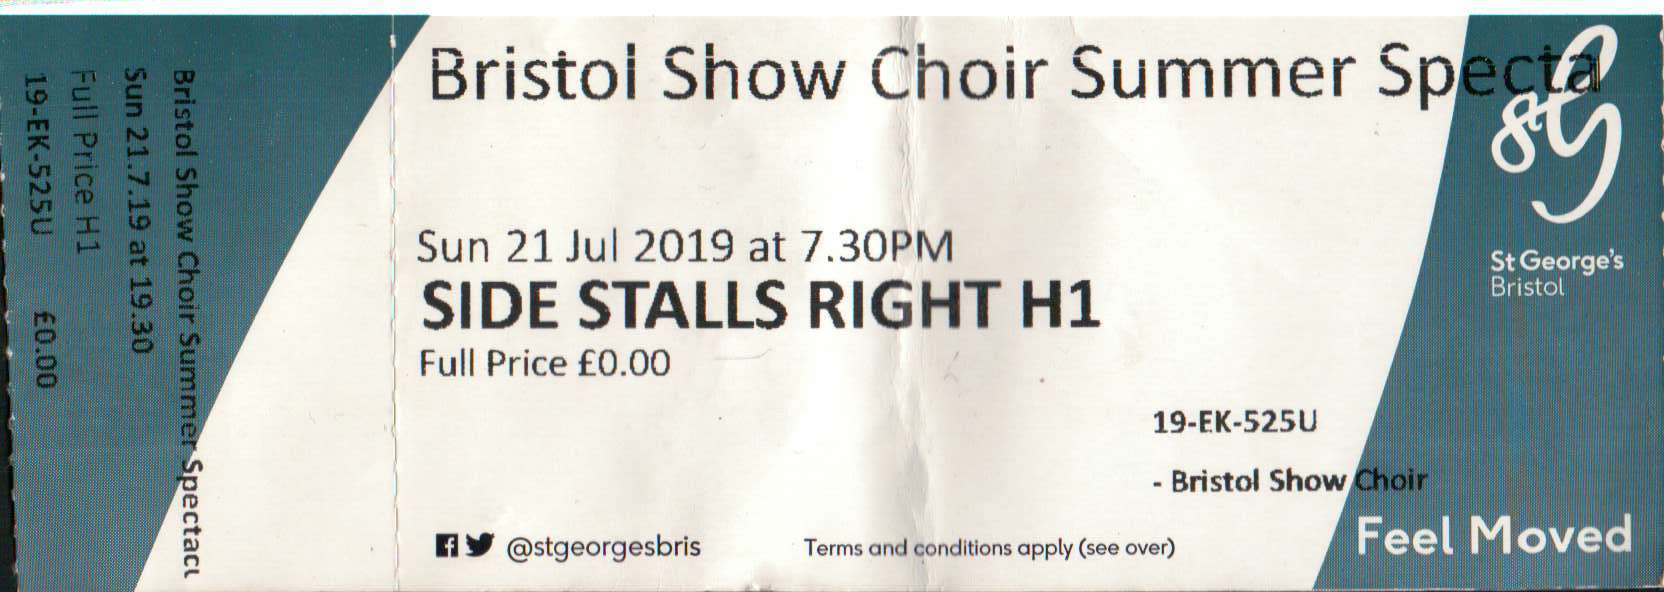 Bristol Show Choir Summer Spectacular